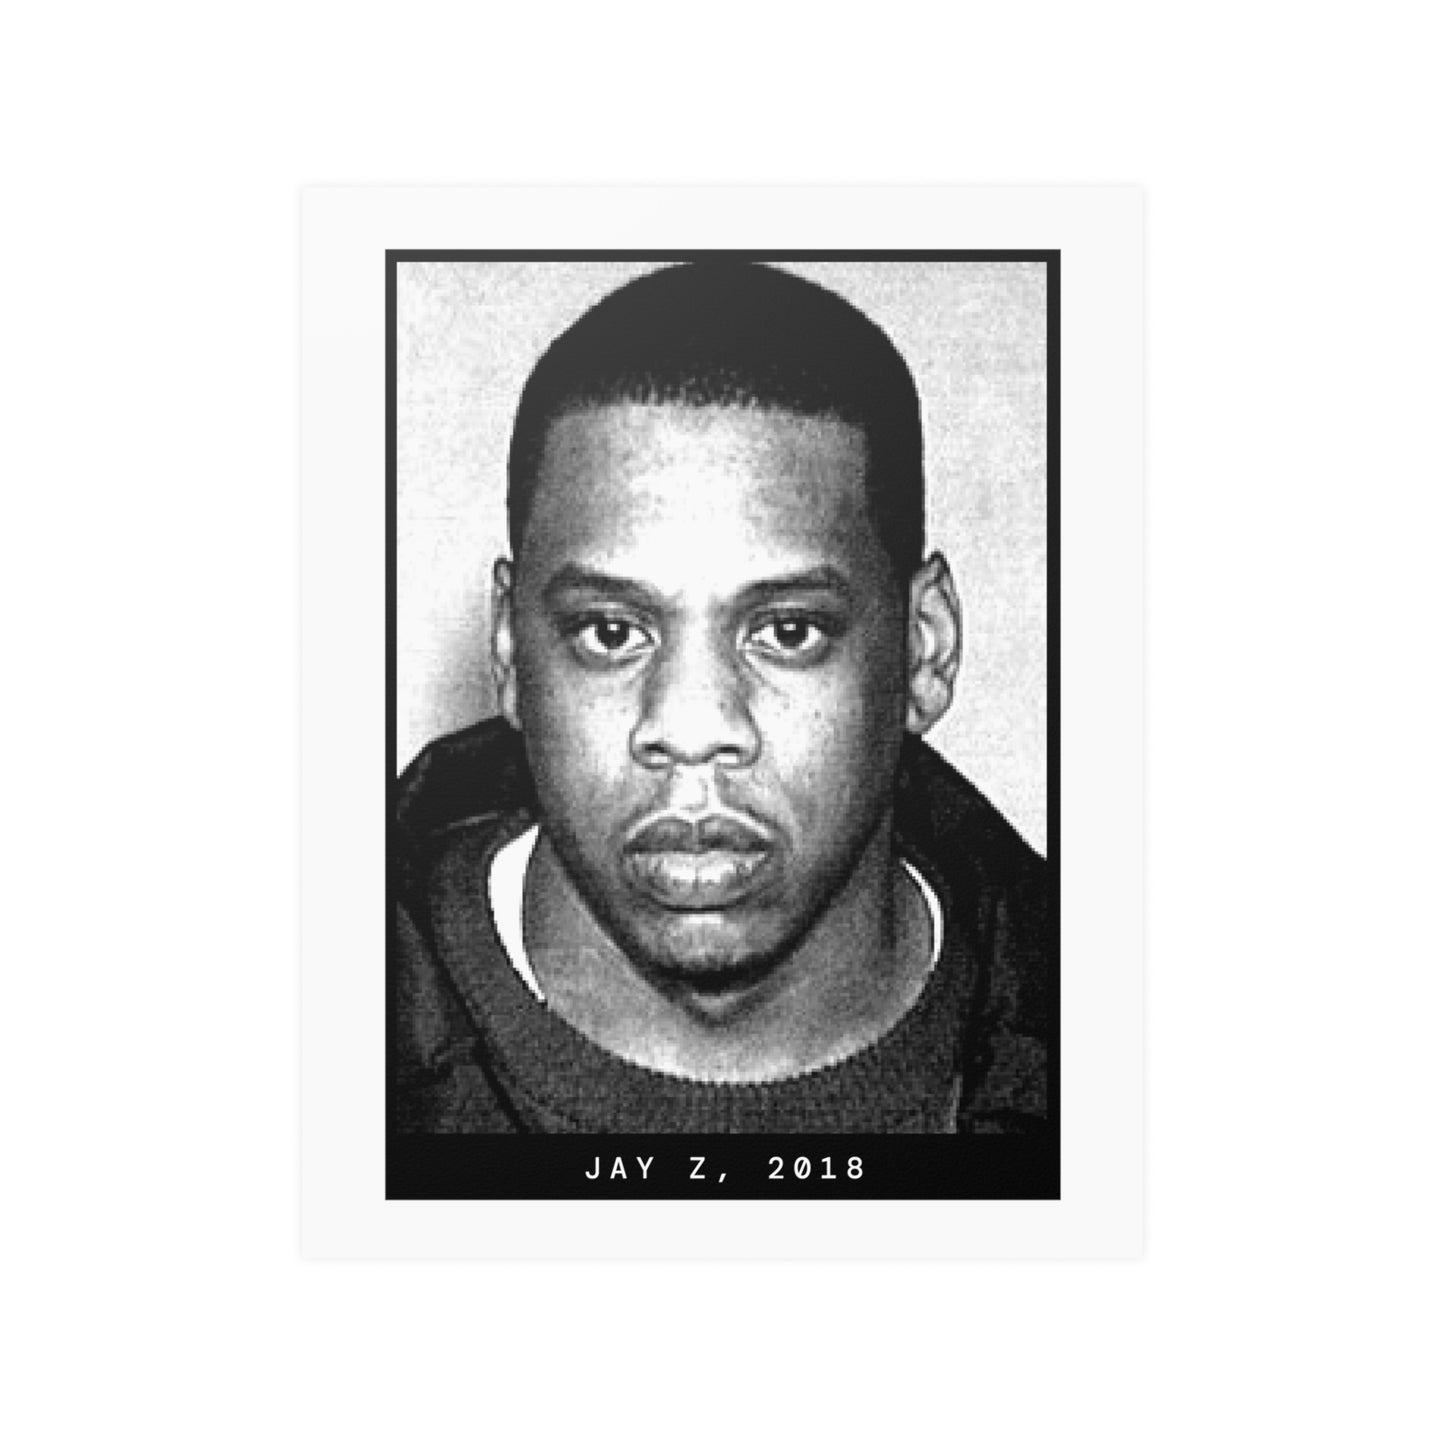 Jay Z, 2018 Rapper Mugshot Poster